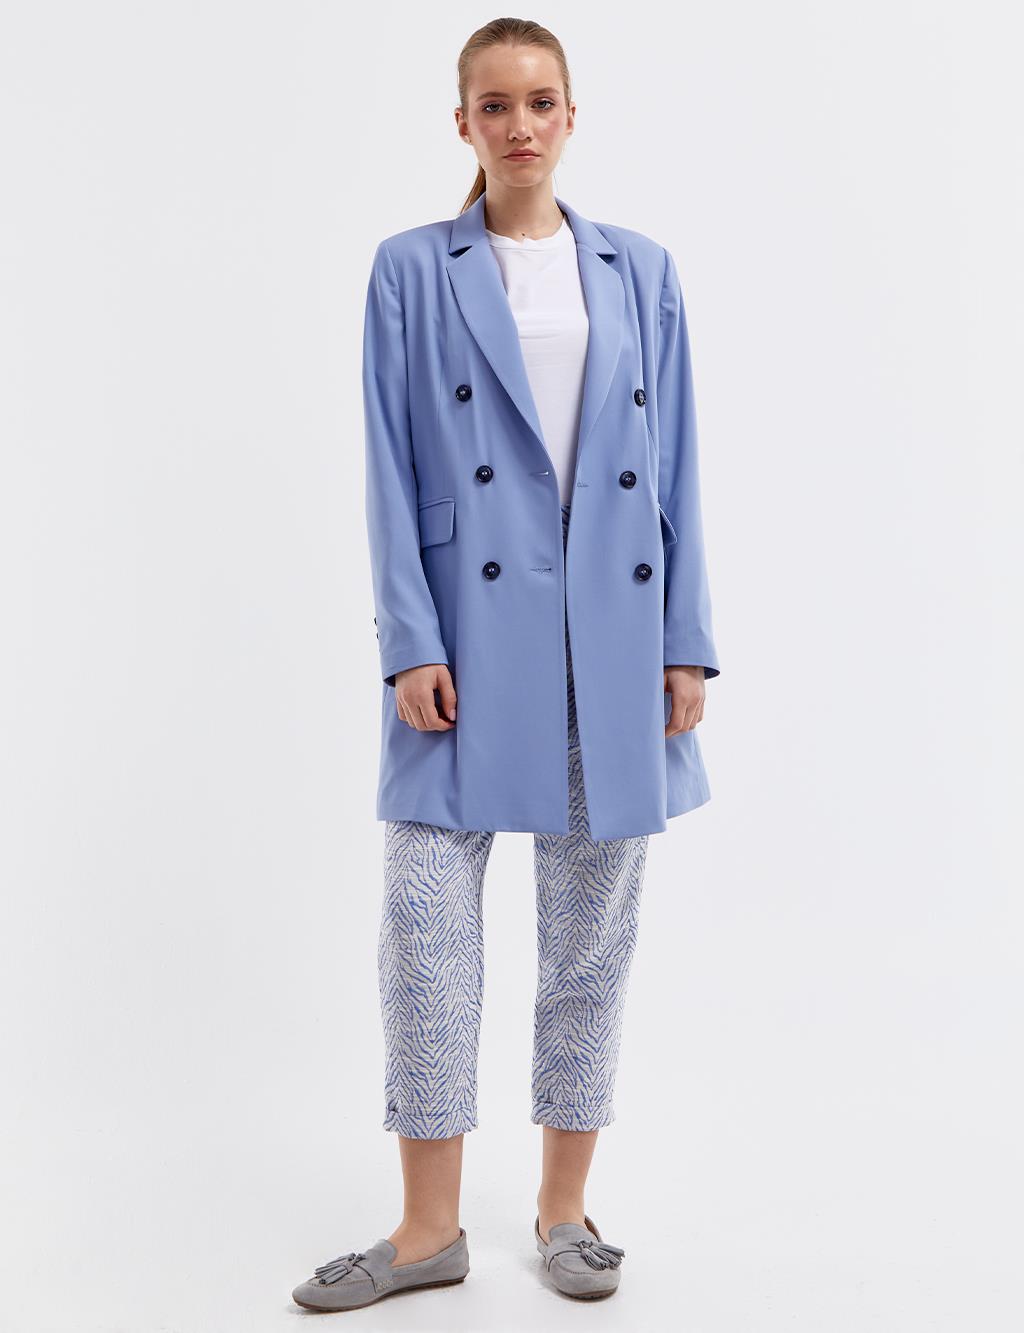 Базовый пиджак-пиджак Небесно-голубой Kayra пиджак базовый 50 размер